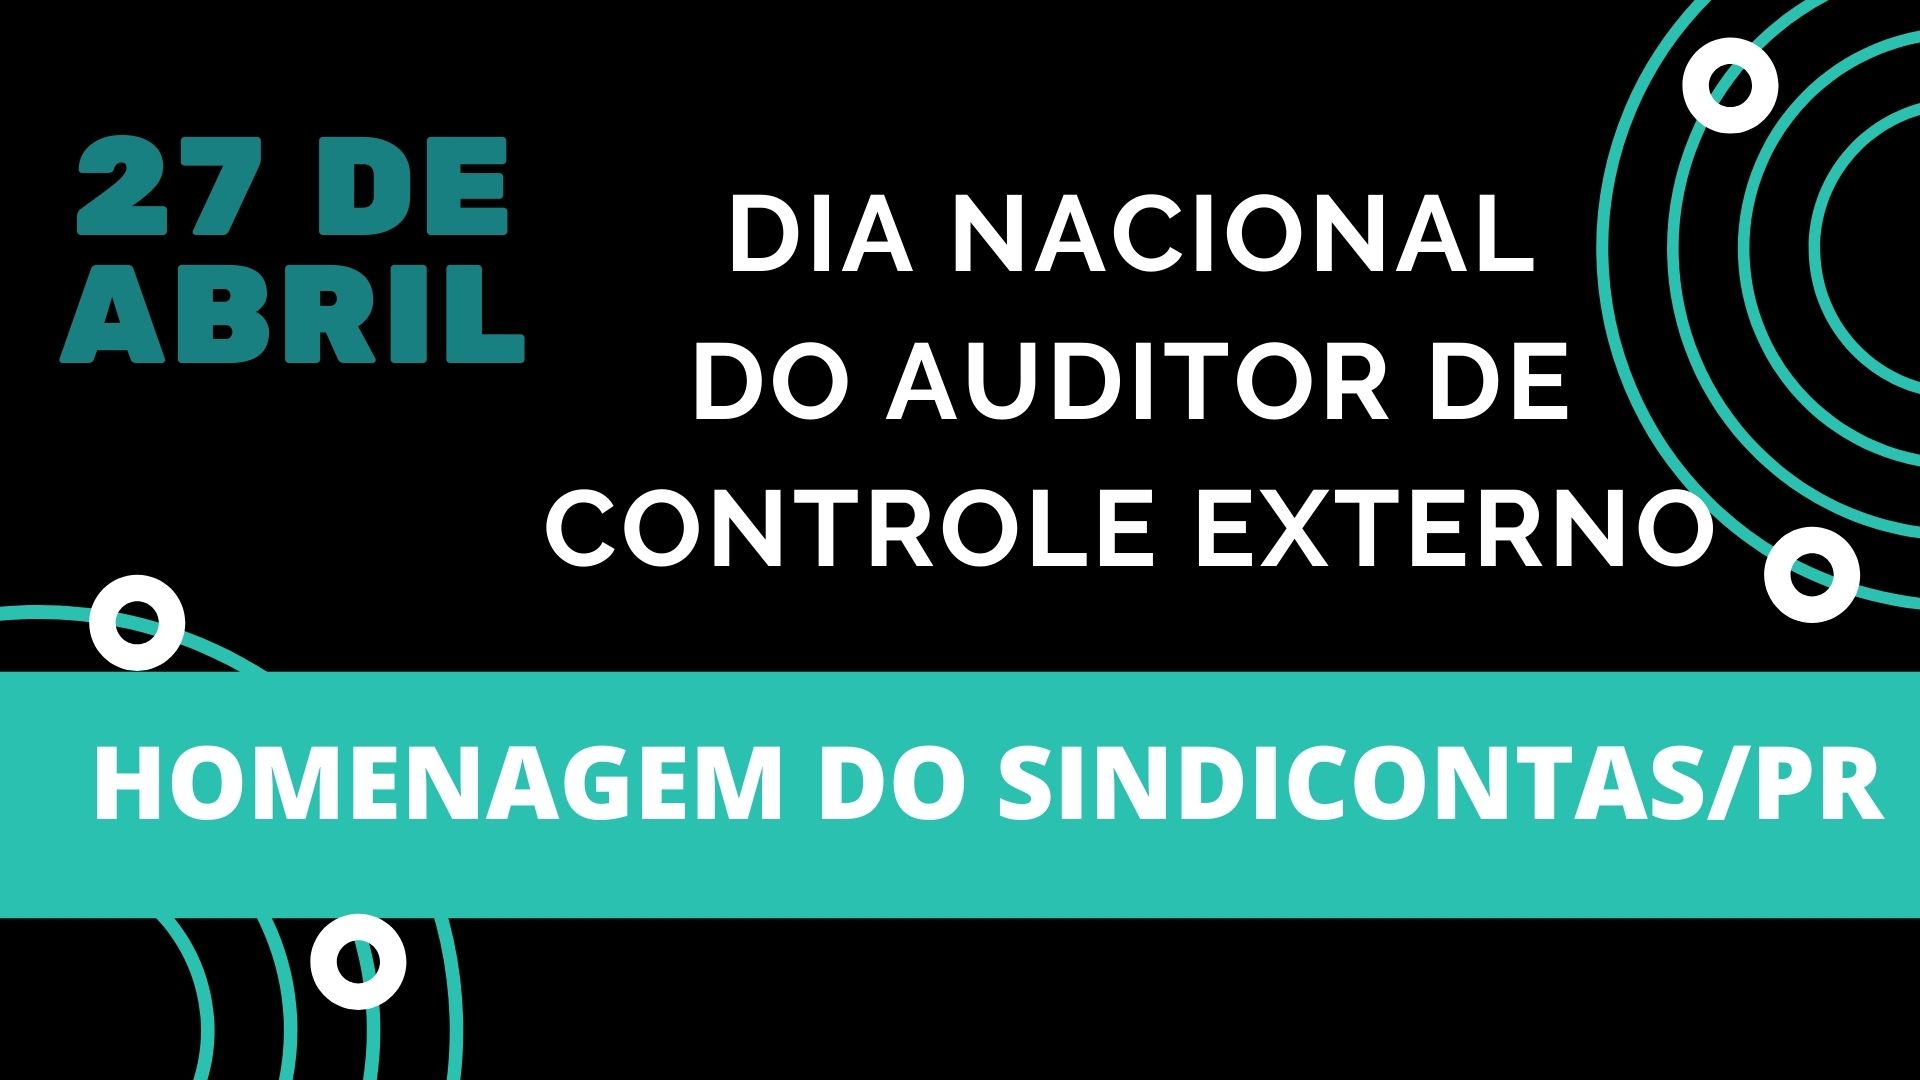 Homenagem do SindiContas/PR pelo DIA NACIONAL DO AUDITOR DE CONTROLE EXTERNO